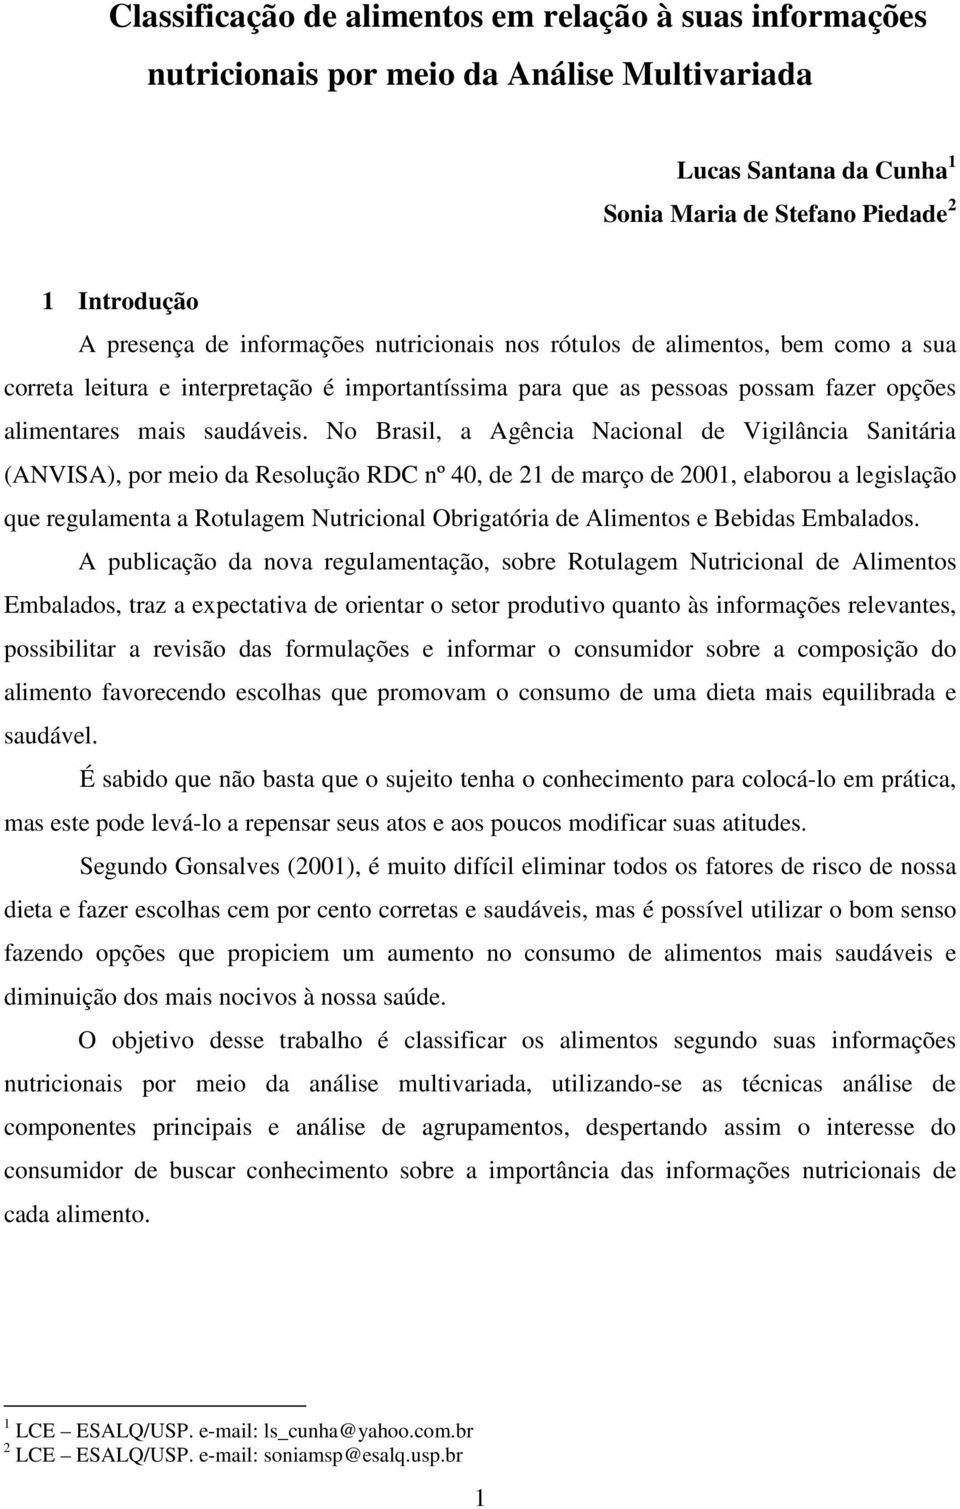 No Brasil, a Agência Nacional de Vigilância Sanitária (ANVISA), por meio da Resolução RDC nº 40, de 21 de março de 2001, elaborou a legislação que regulamenta a Rotulagem Nutricional Obrigatória de